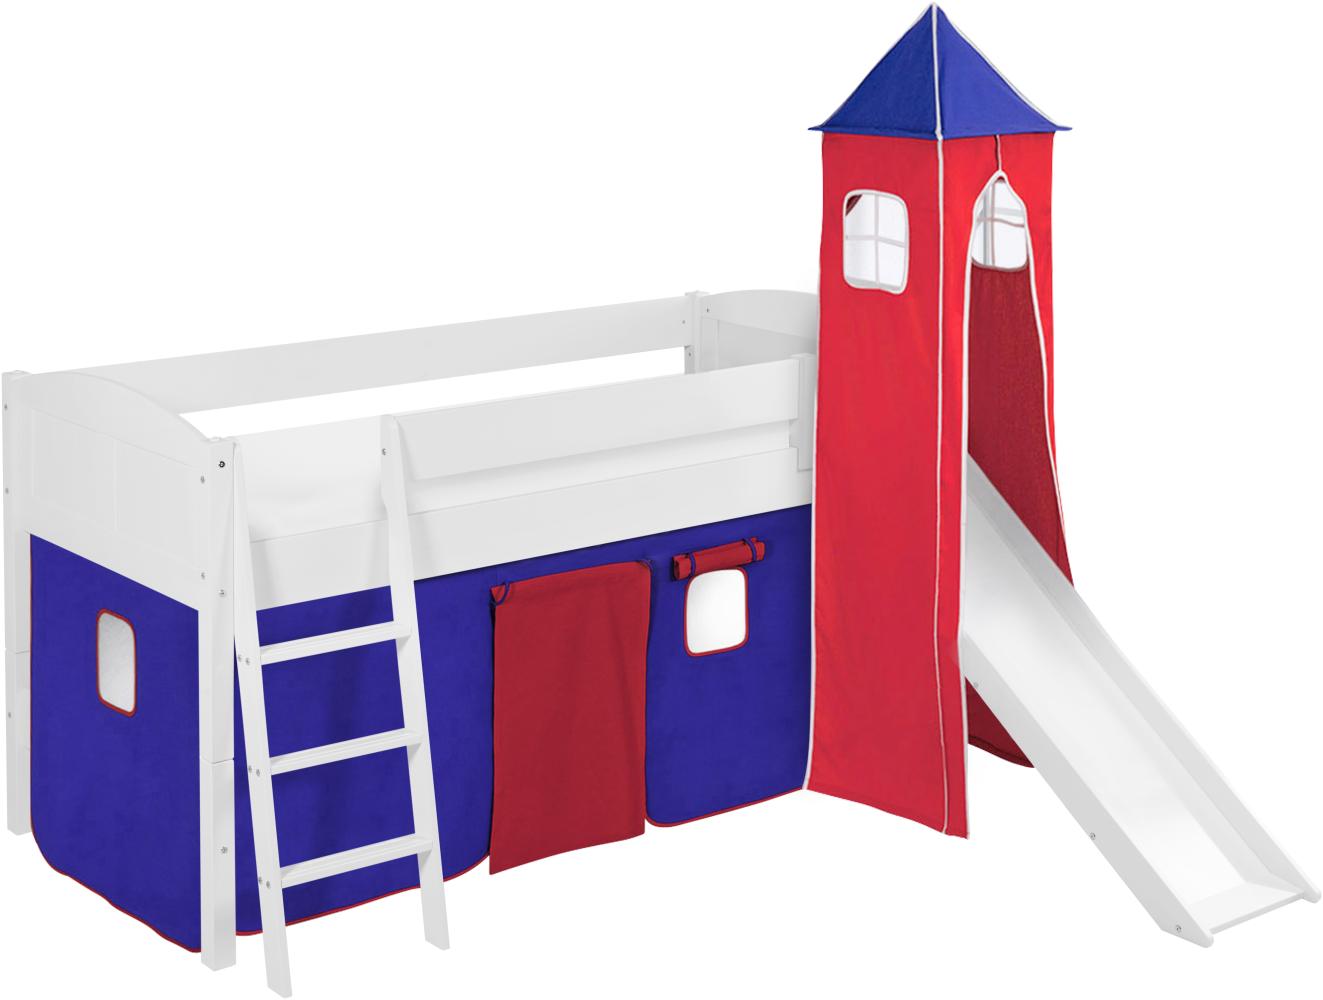 Lilokids 'Ida 4106' Spielbett 90 x 200 cm, Blau Rot, Kiefer massiv, mit Turm, Rutsche und Vorhang Bild 1